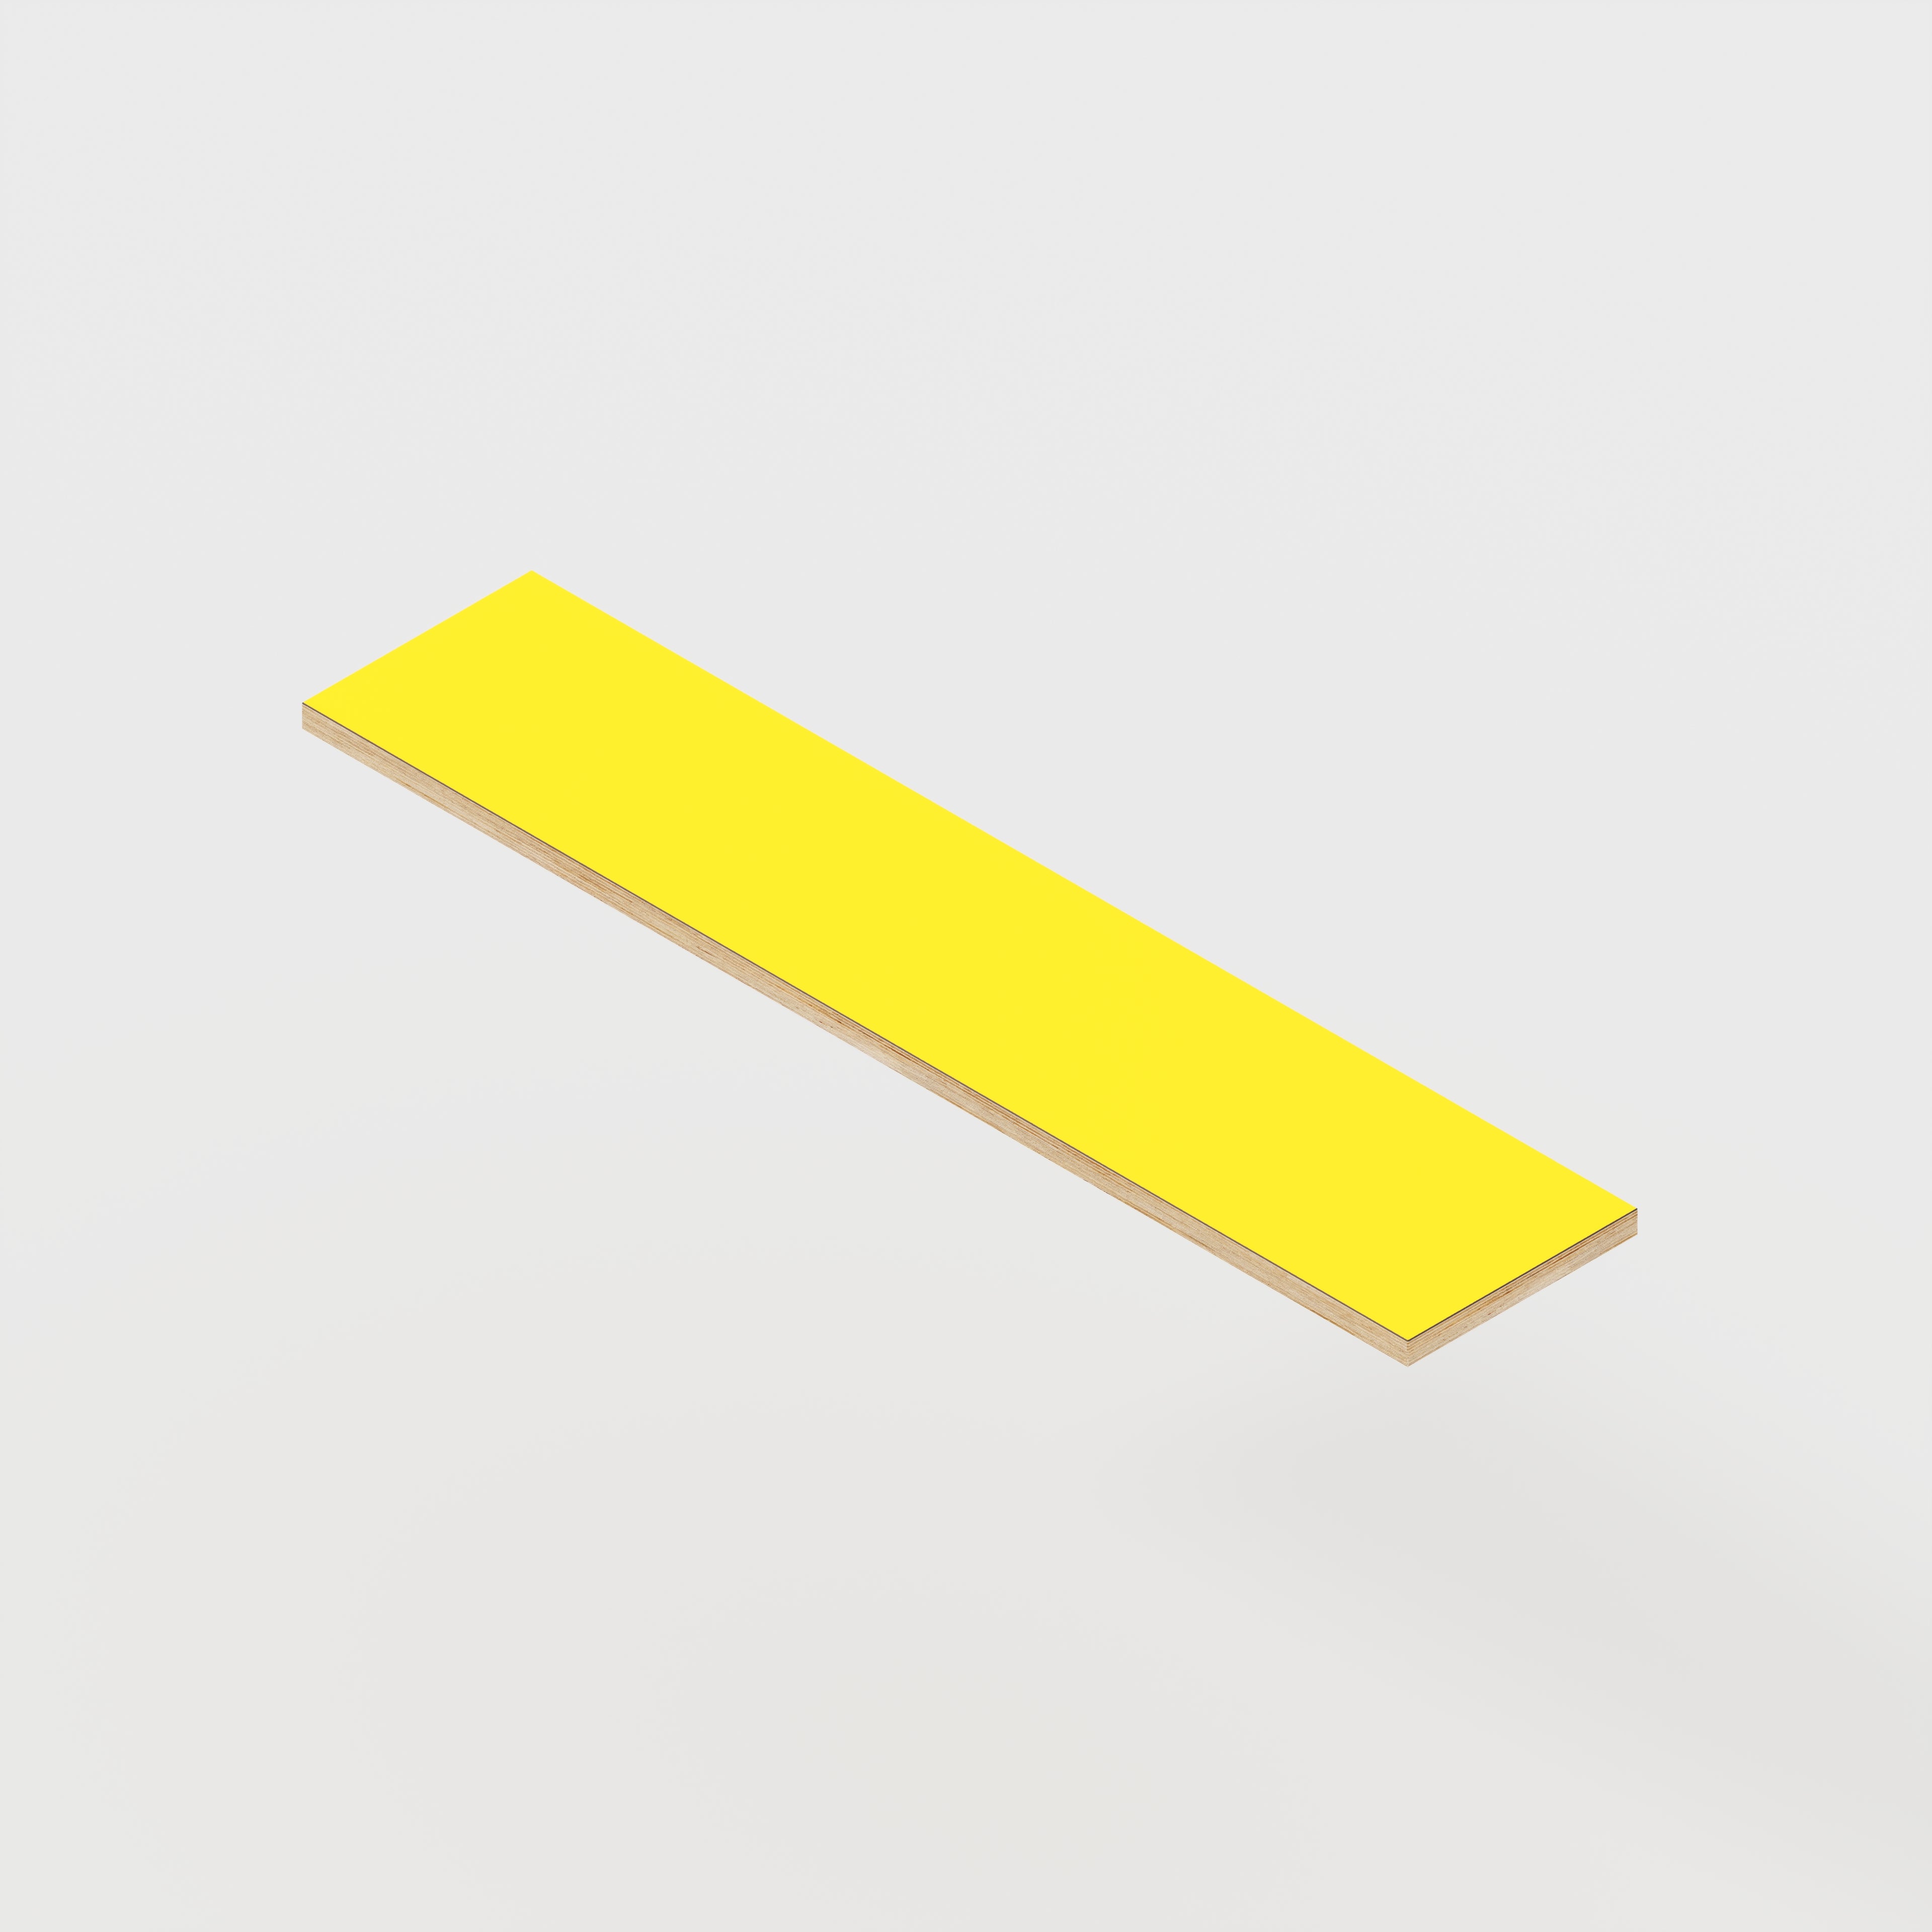 Shelf - Formica Chrome Yellow - 1600(w) x 250(d)